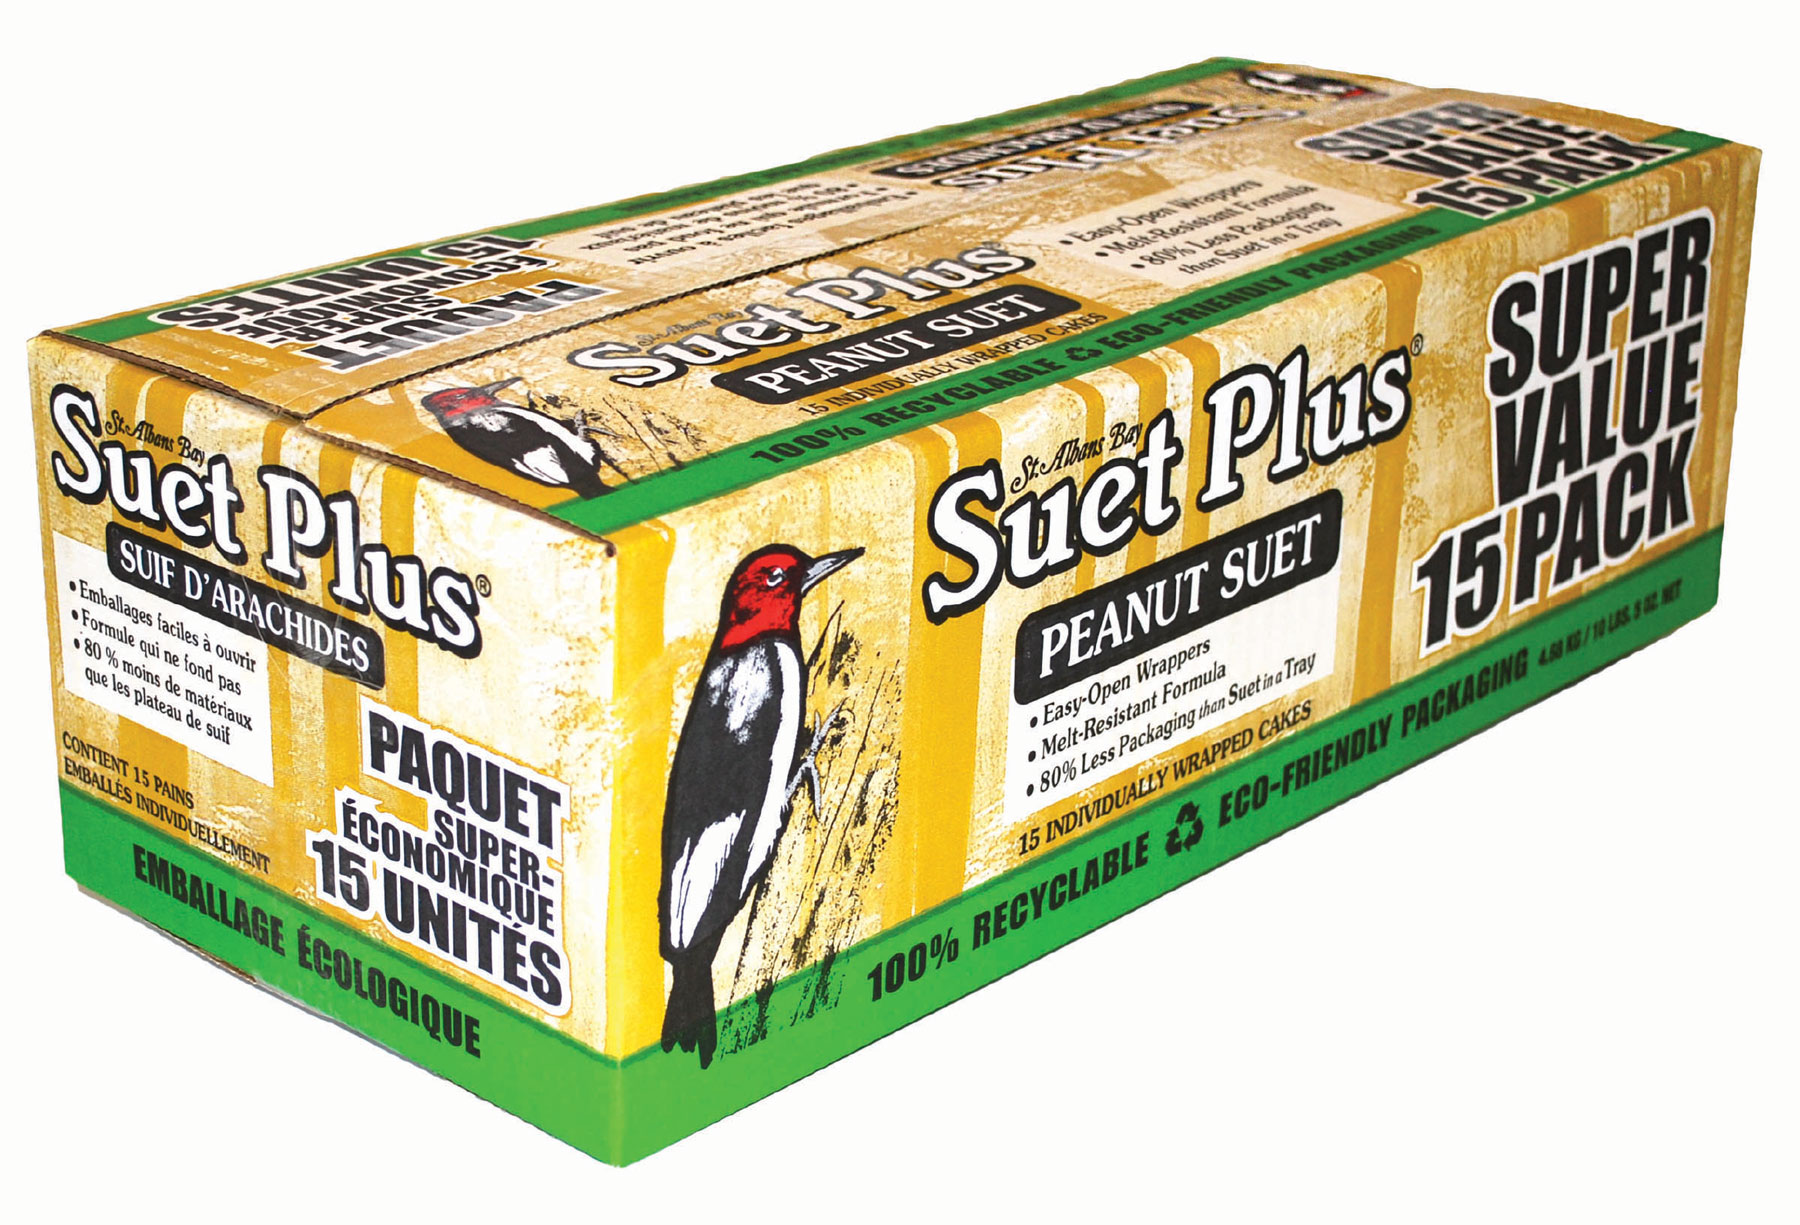 Super Value 15 Pack – Peanut Blend